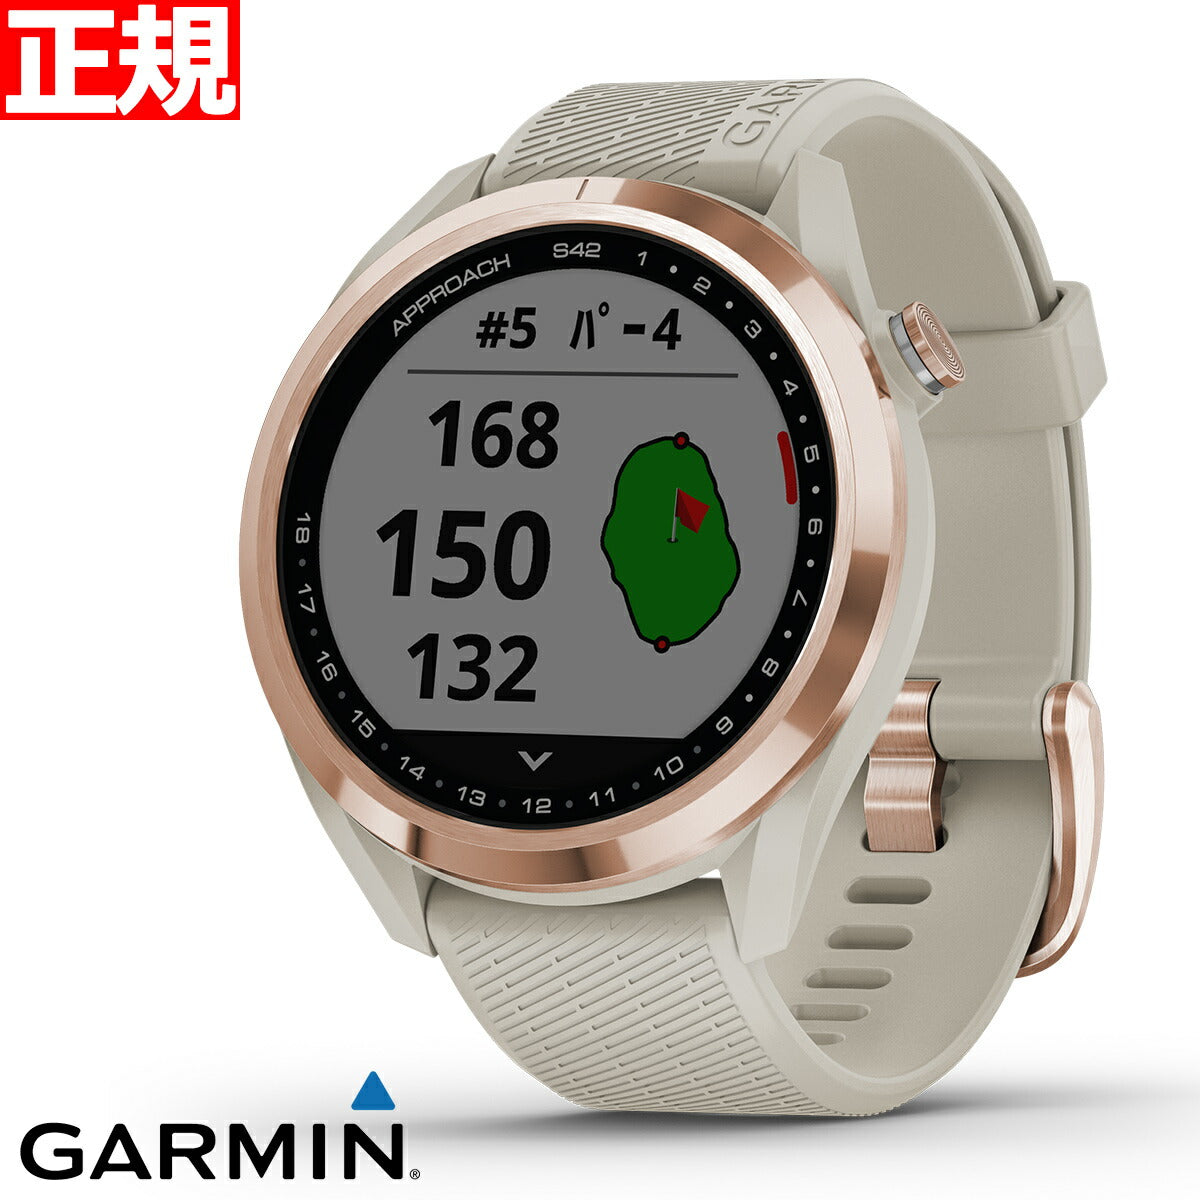 ガーミン GARMIN スマートウォッチ Approach S42 Light Sand/Rose Gold アプローチ S42 ライトサンド/ローズゴールド ゴルフ GPS ウェアラブル 腕時計 010-02572-22